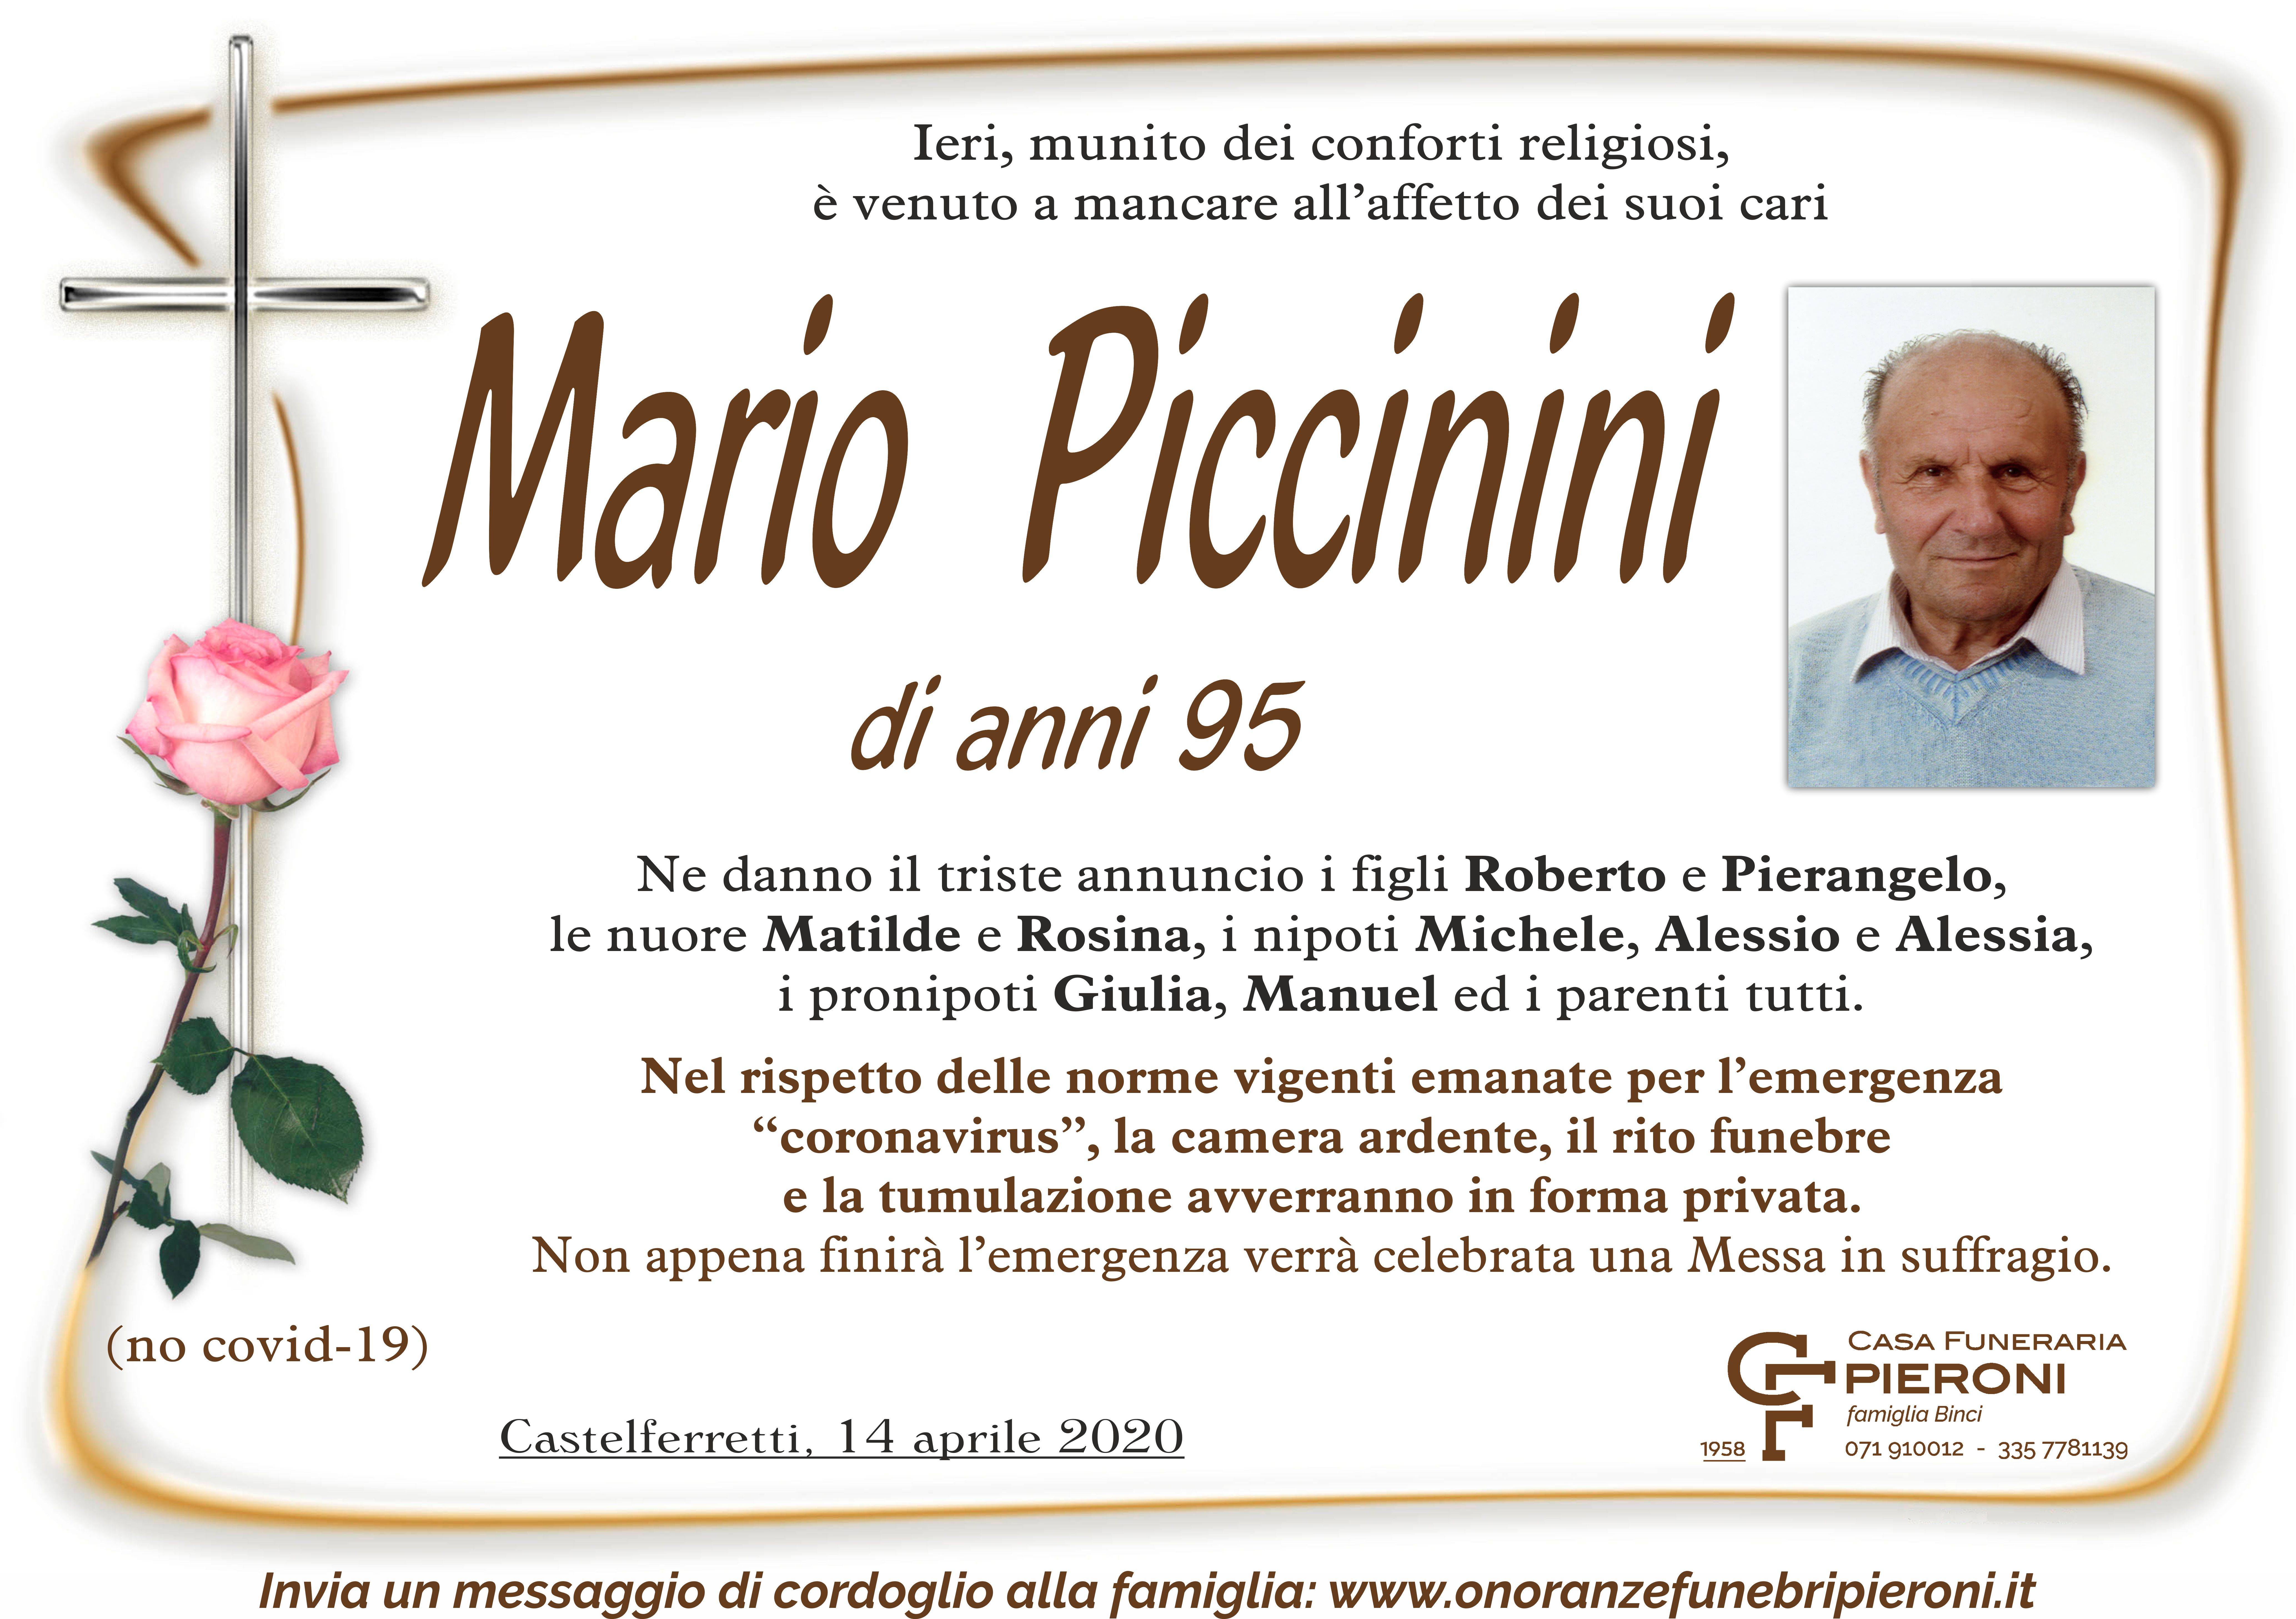 Mario Piccinini